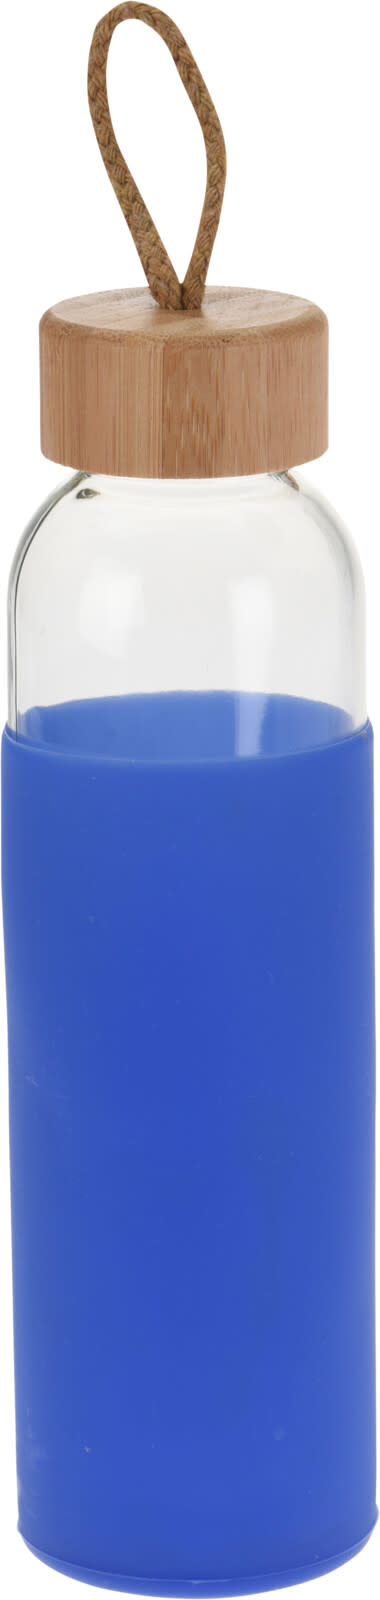 Koopman Drinking Bottle Glass 500Ml - Asst Colours